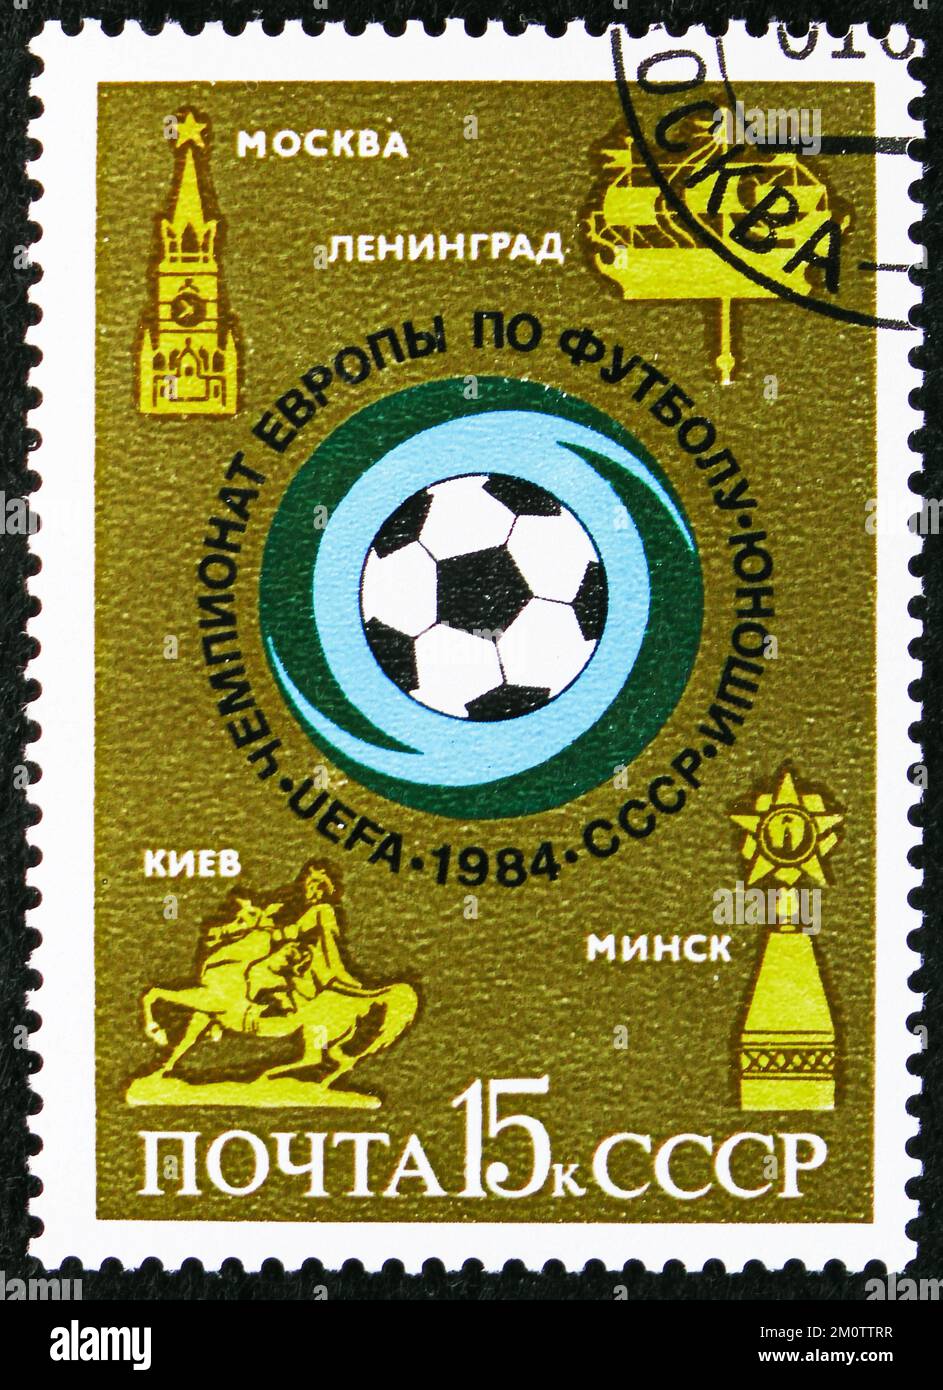 MOSCOU, RUSSIE - 29 OCTOBRE 2022: Timbre-poste imprimé en URSS montre le Championnat européen de football de la Jeunesse de l'UEFA, vers 1984 Banque D'Images